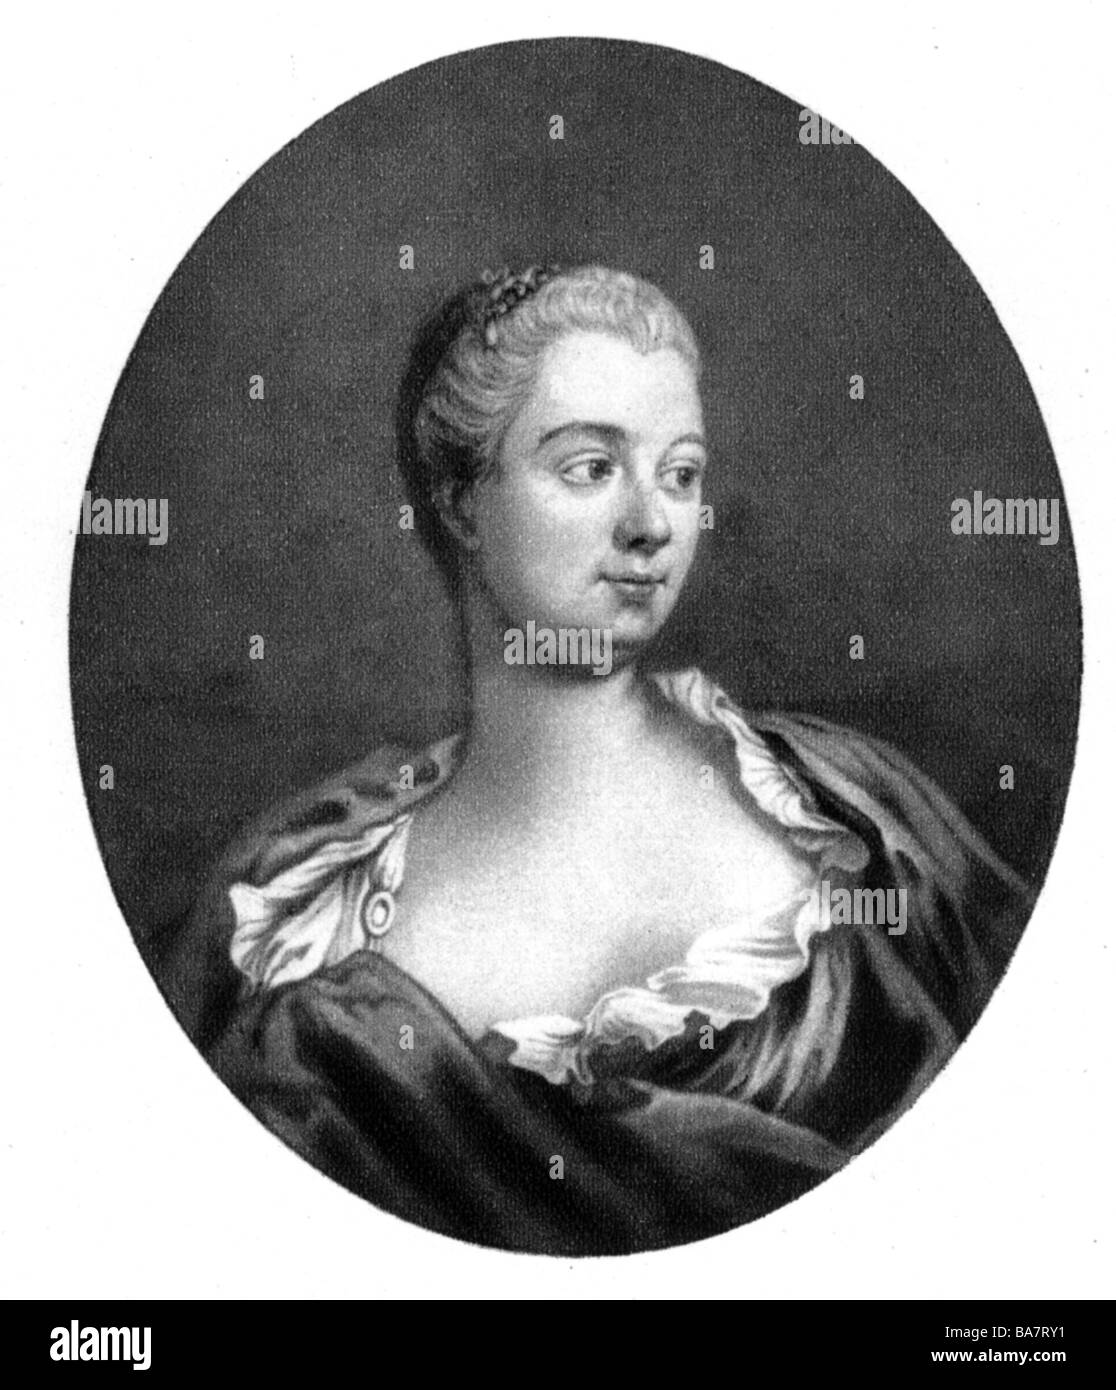 Pompadour, Jeanne Antoinette Poisson Marquise de, 29.12. 1721 - 15.4.1764, portrait, lithograph after painting by Francois Boucher, Stock Photo